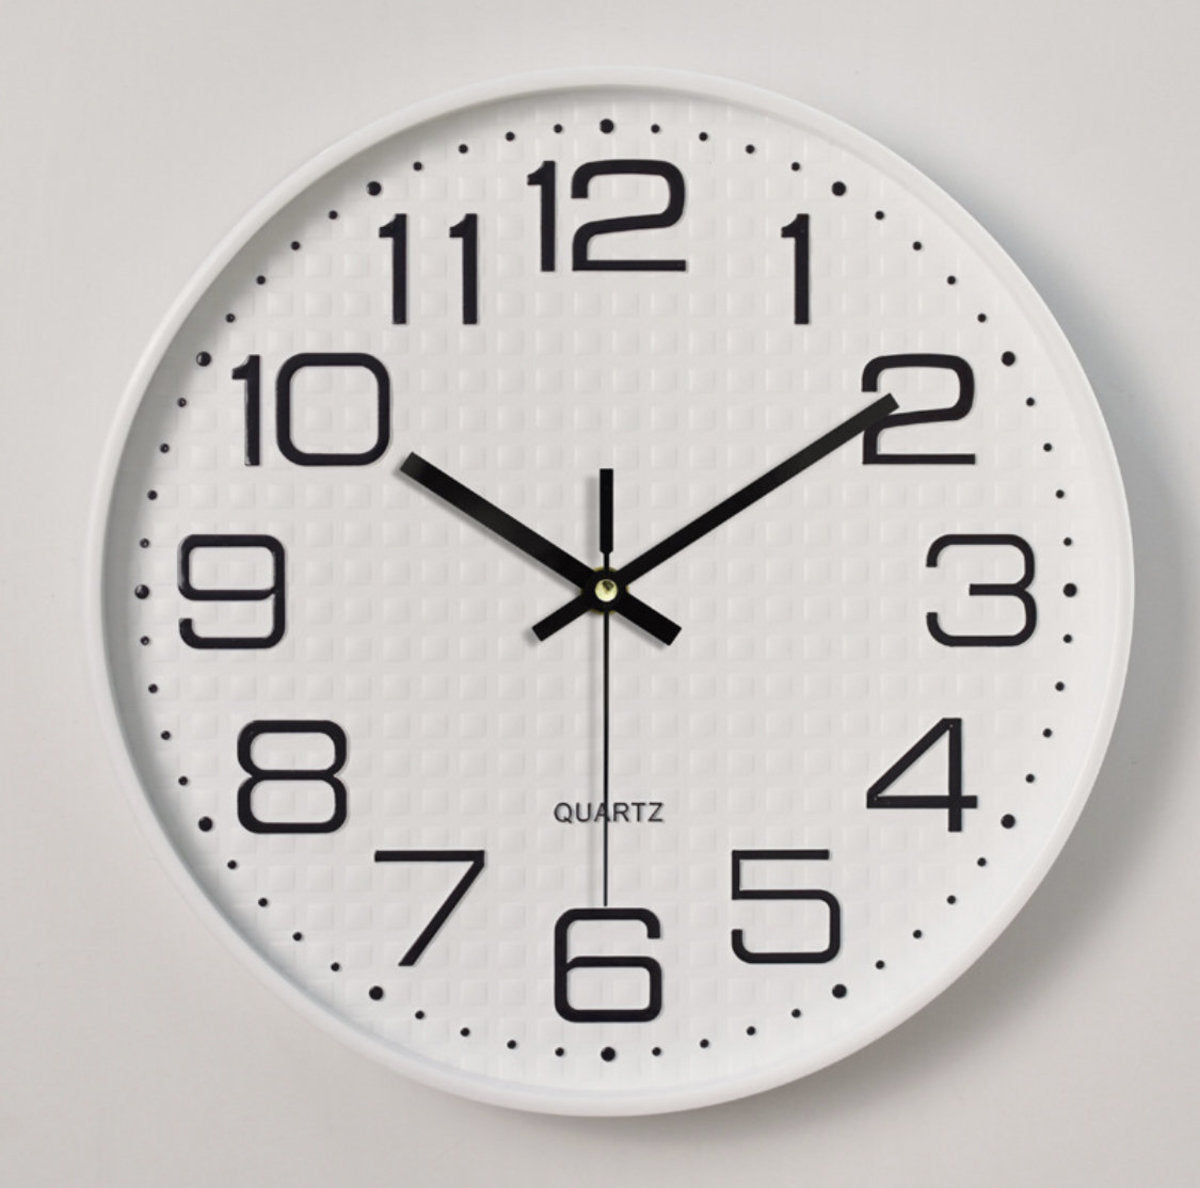 12英寸 塑料掛鐘3d刻度 創意時尚客廳立體數字刻度掛鐘-白色 電子鐘